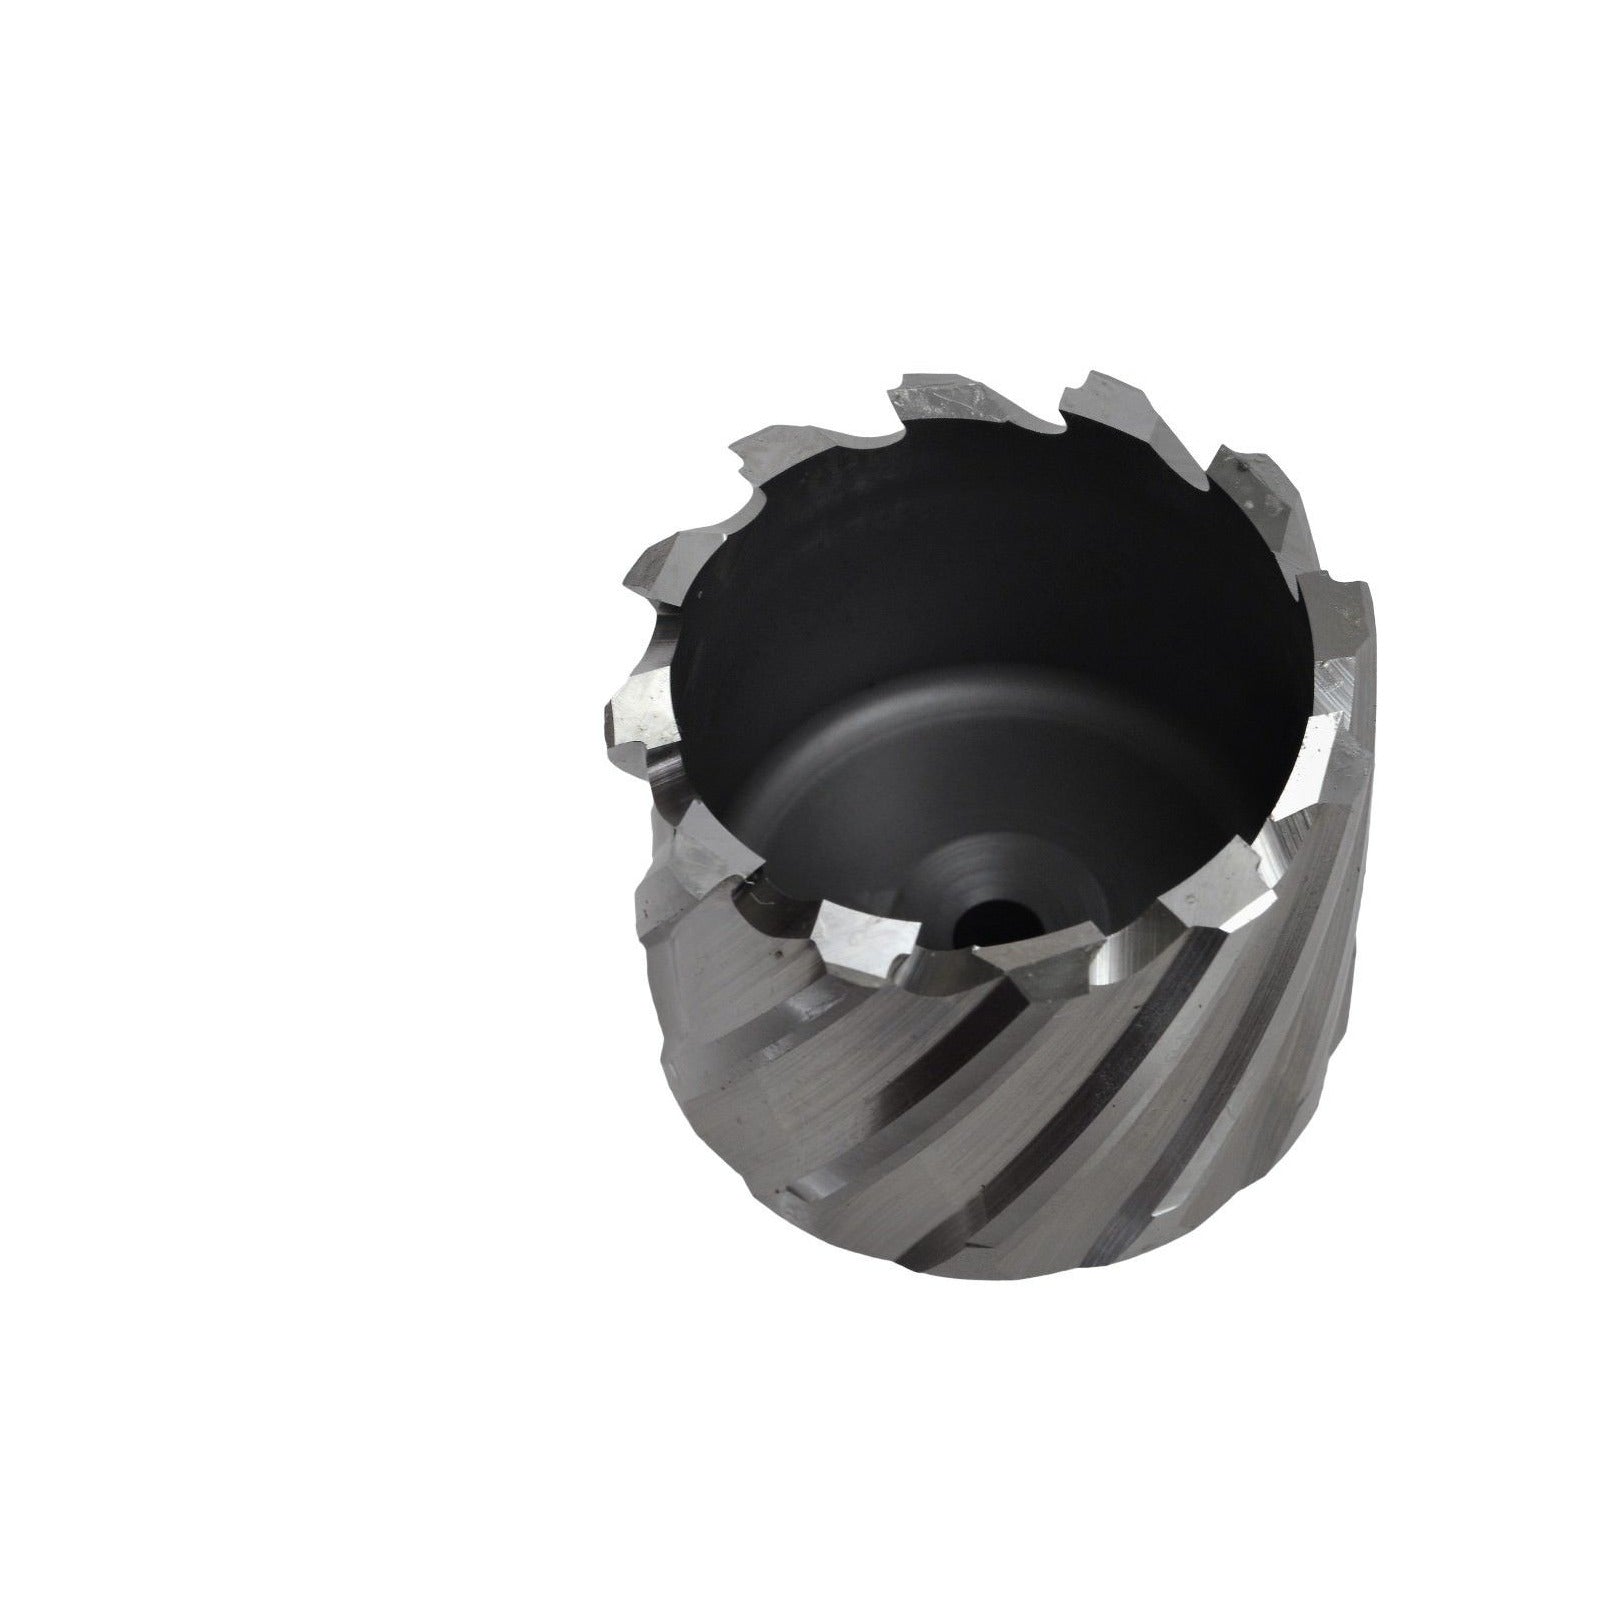 50x25 mm HSS Annular Broach Cutter ; Rotabroach Magnetic Drill ; Universal Shank